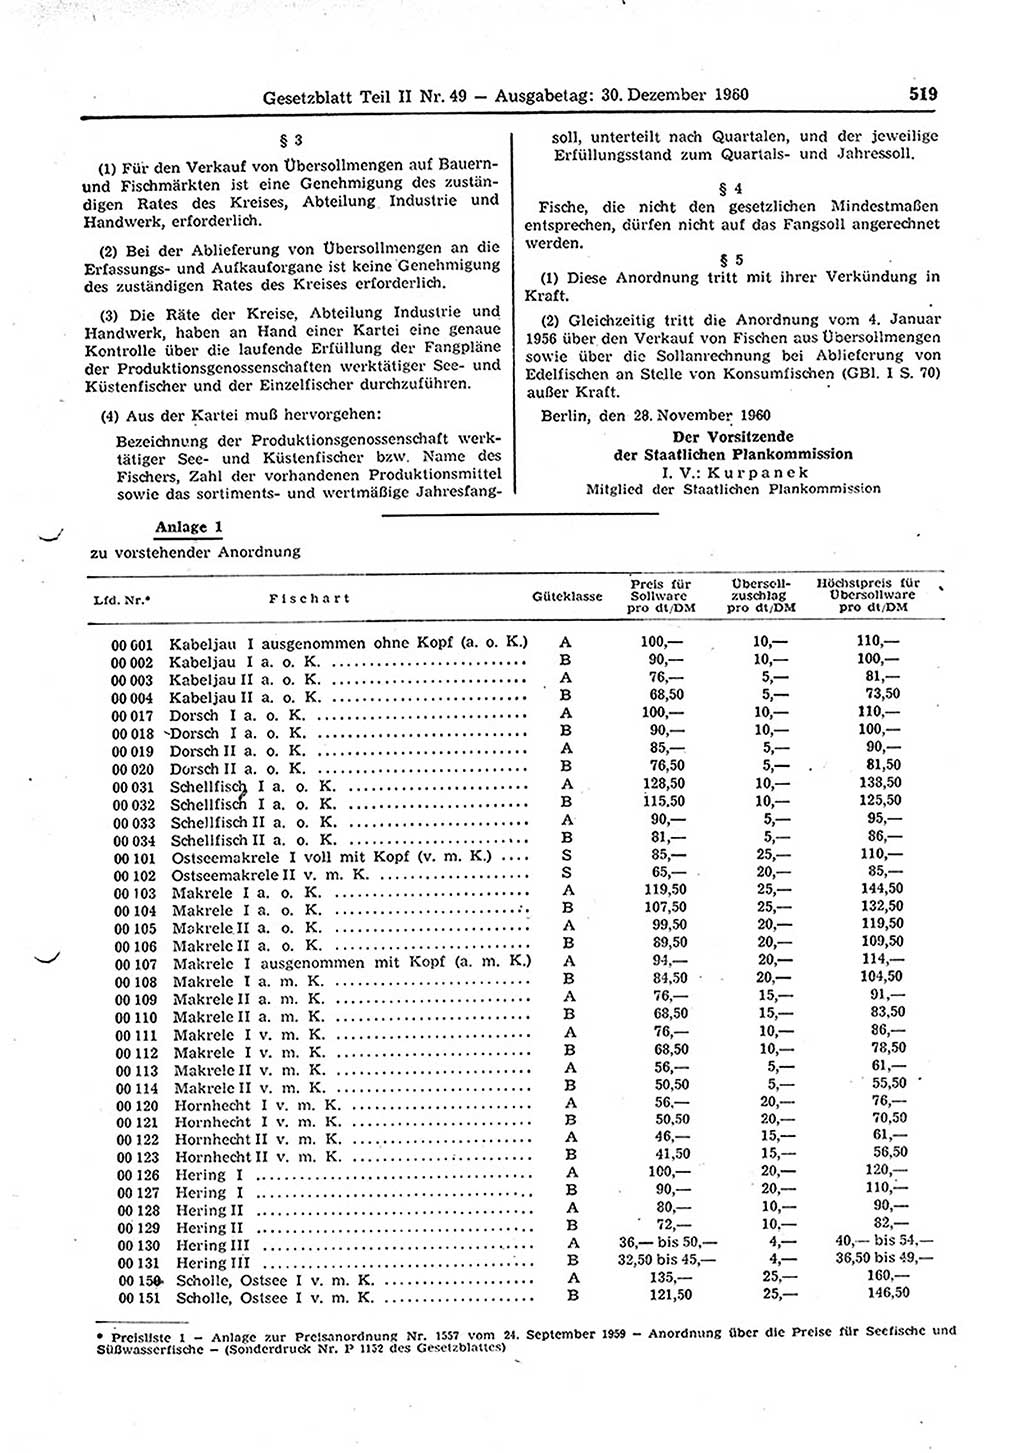 Gesetzblatt (GBl.) der Deutschen Demokratischen Republik (DDR) Teil ⅠⅠ 1960, Seite 519 (GBl. DDR ⅠⅠ 1960, S. 519)